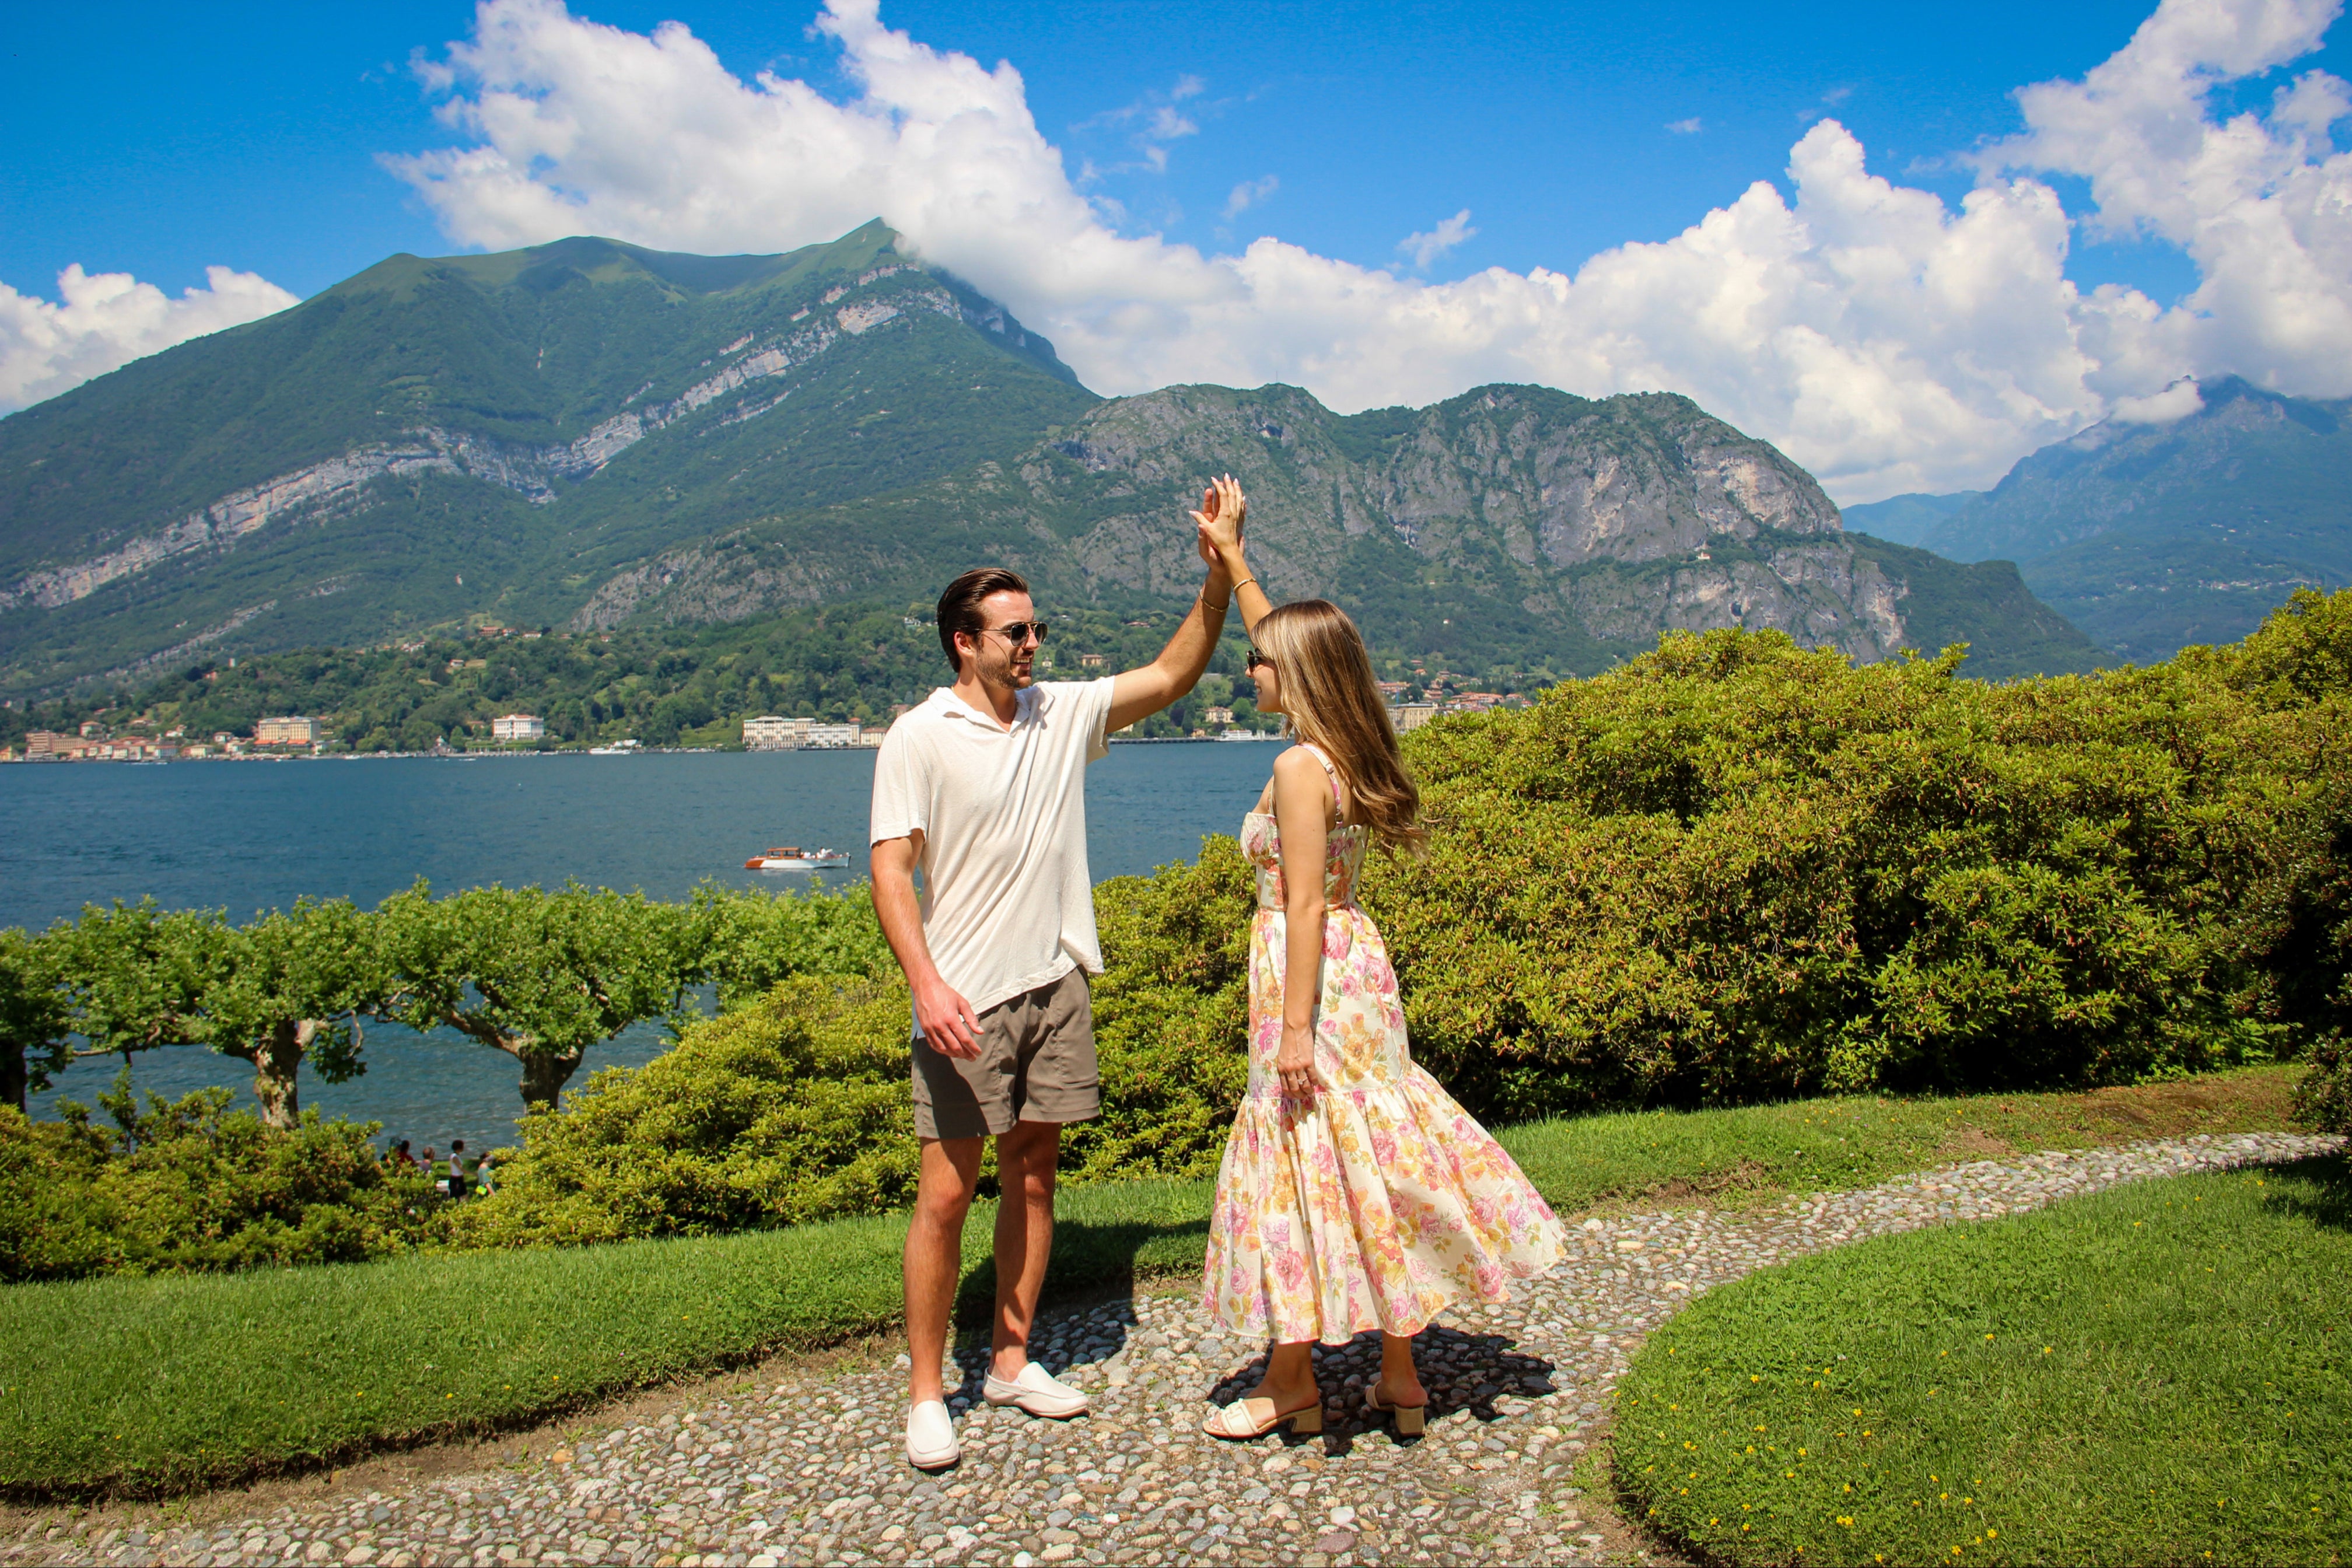 A Romantic Proposal at Villa Melzi in Bellagio, Lake Como